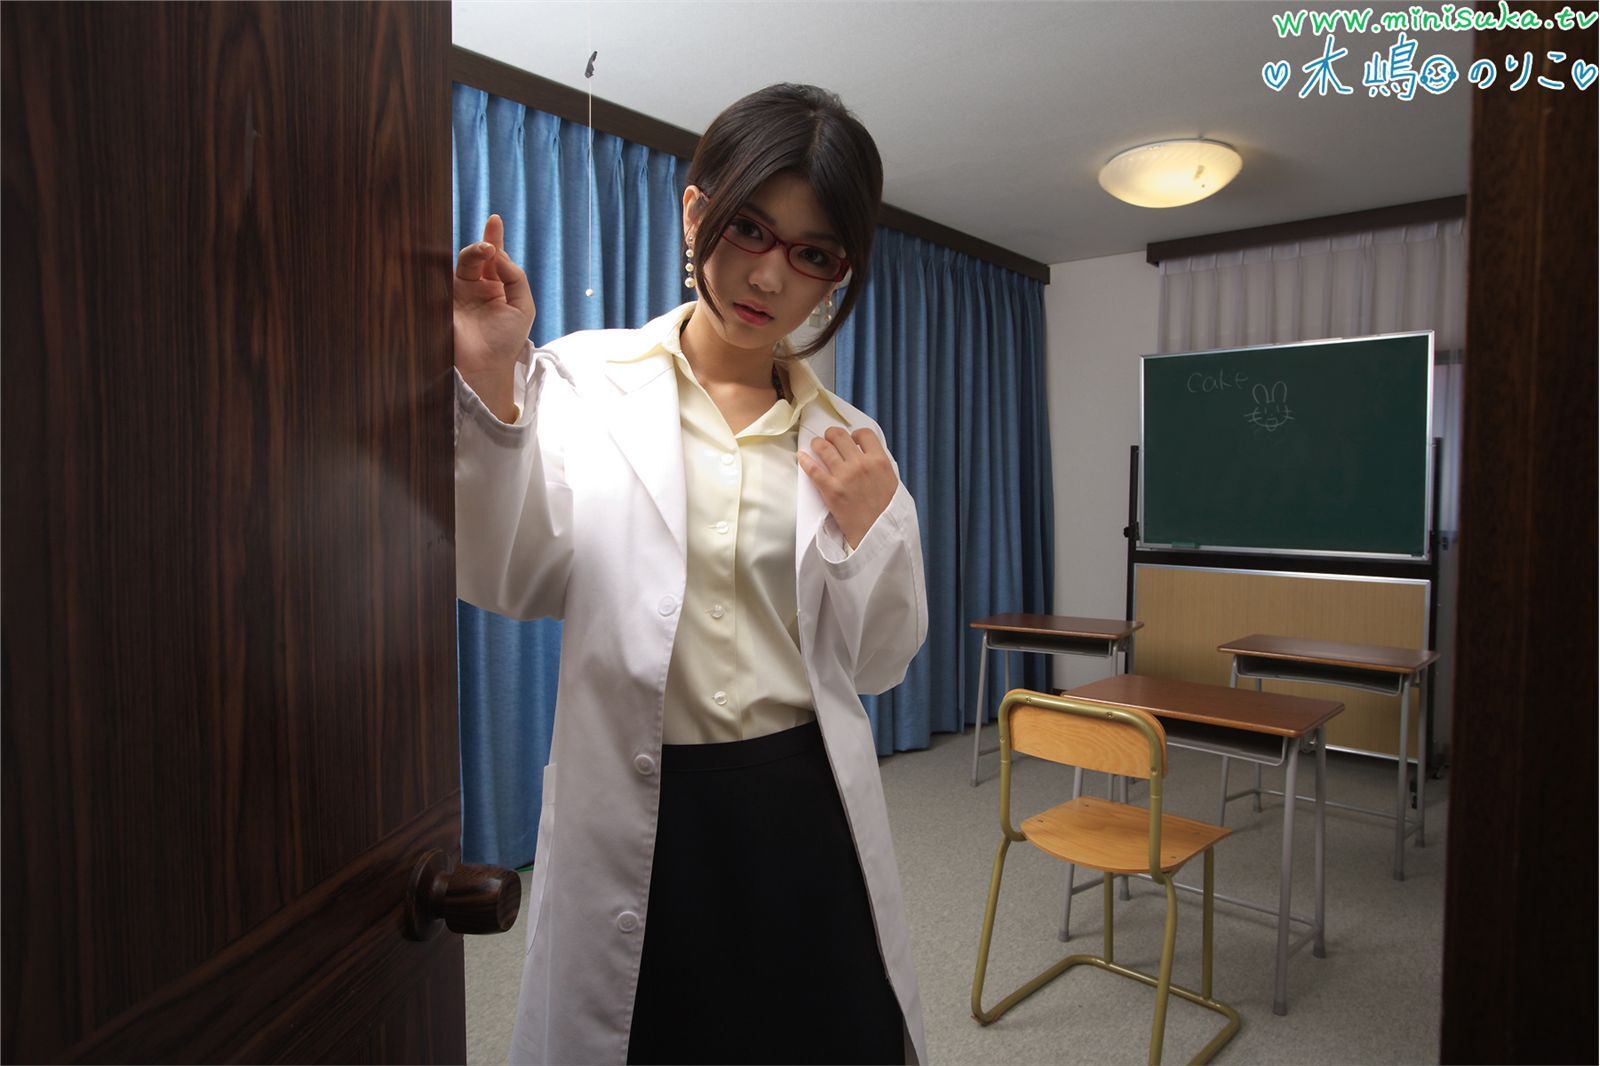 木嶋のりこ [Minisuka.tv] 现役女子高生 Noriko Kijima 6  日本高清MM